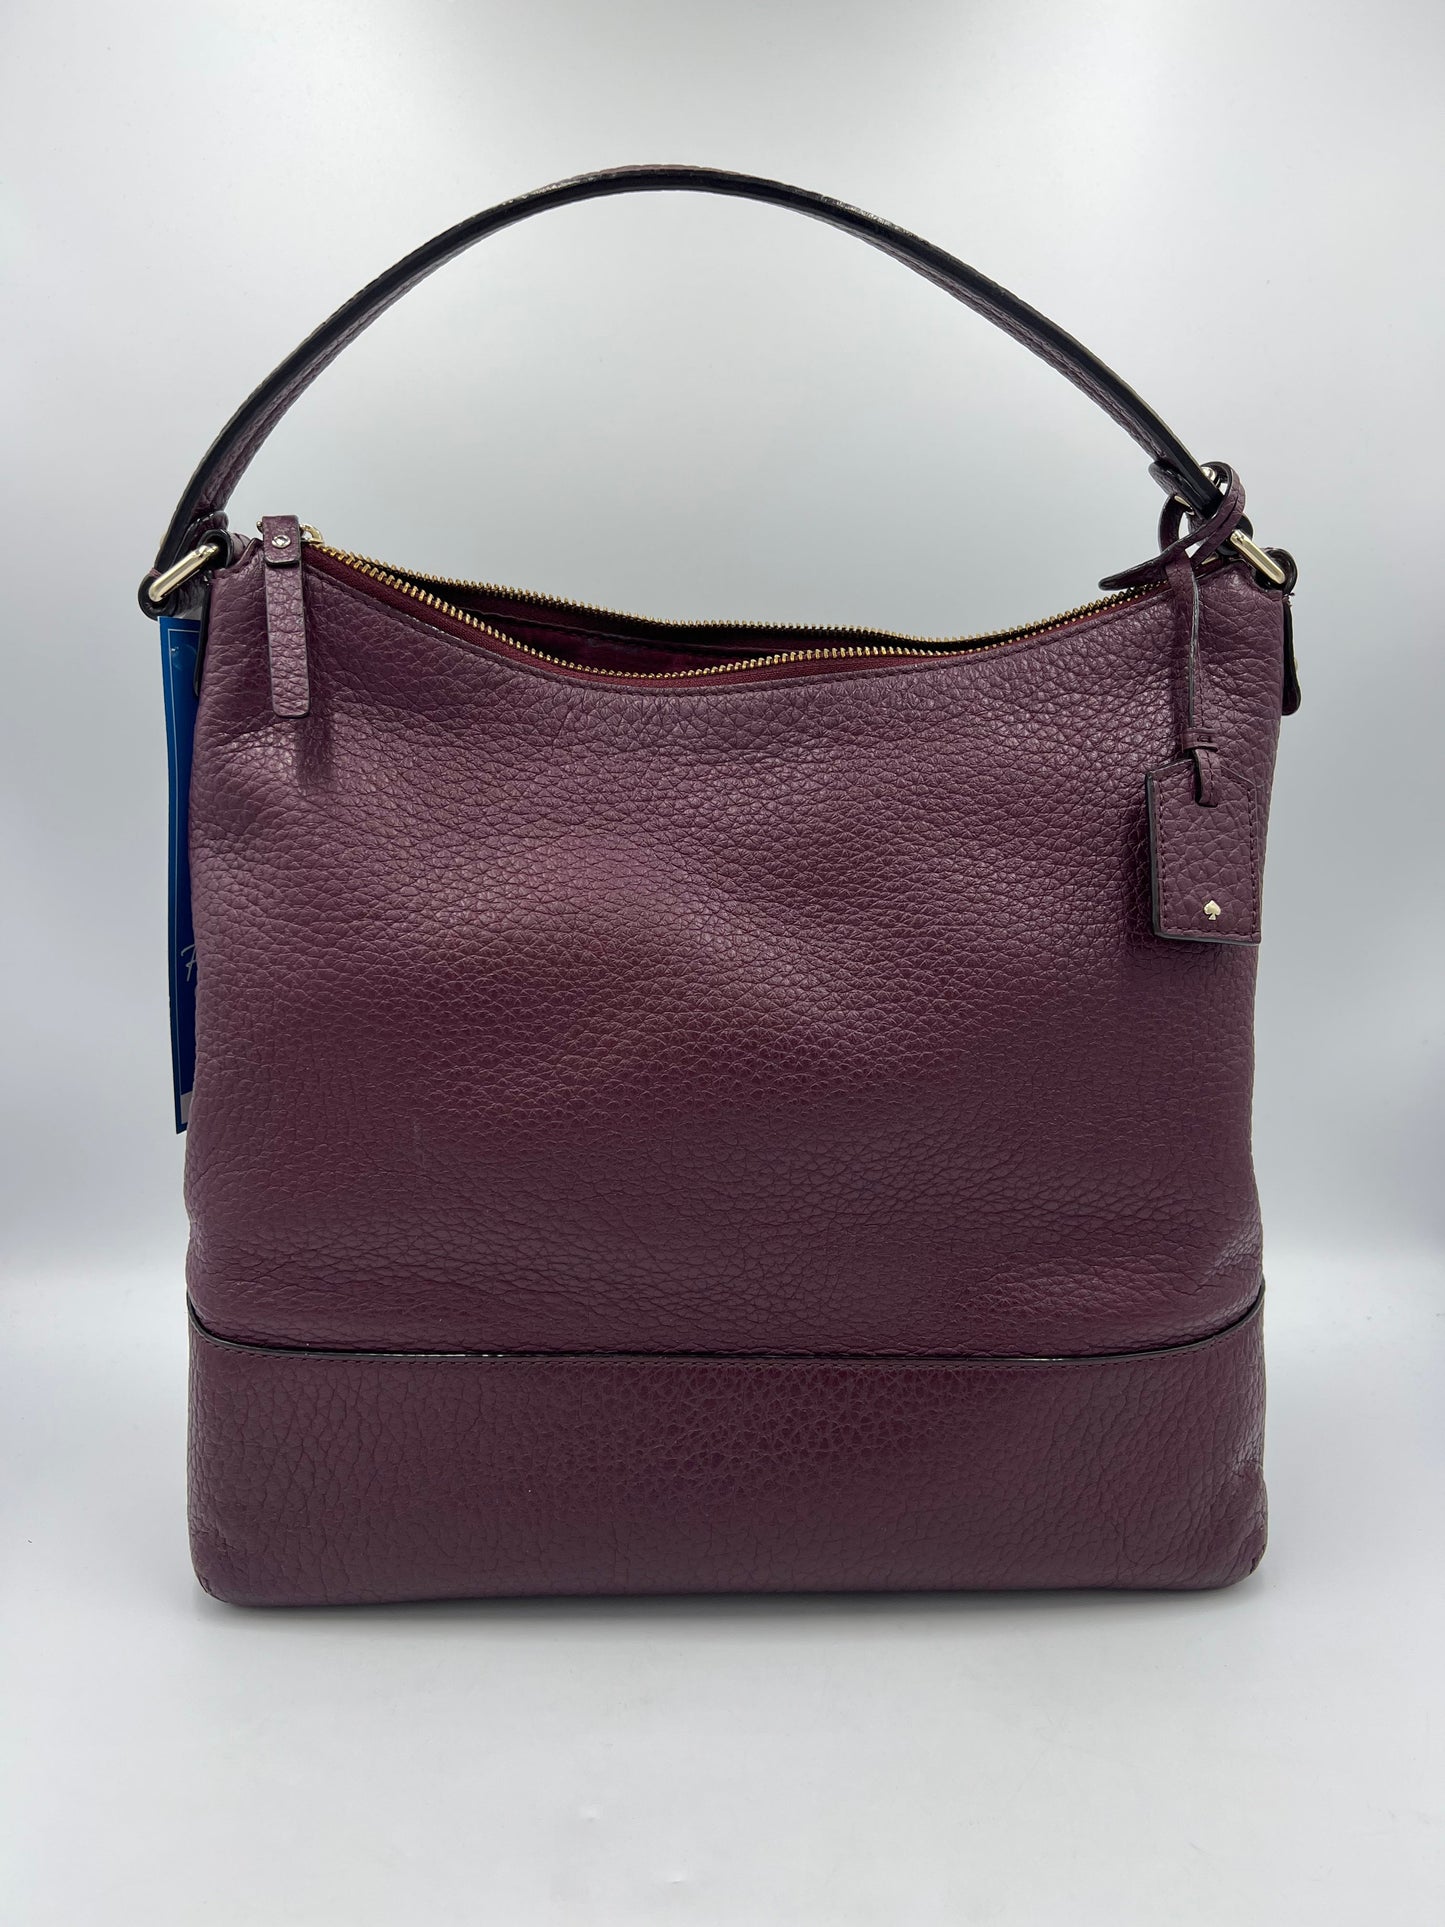 Handbag Leather Designer By Kate Spade